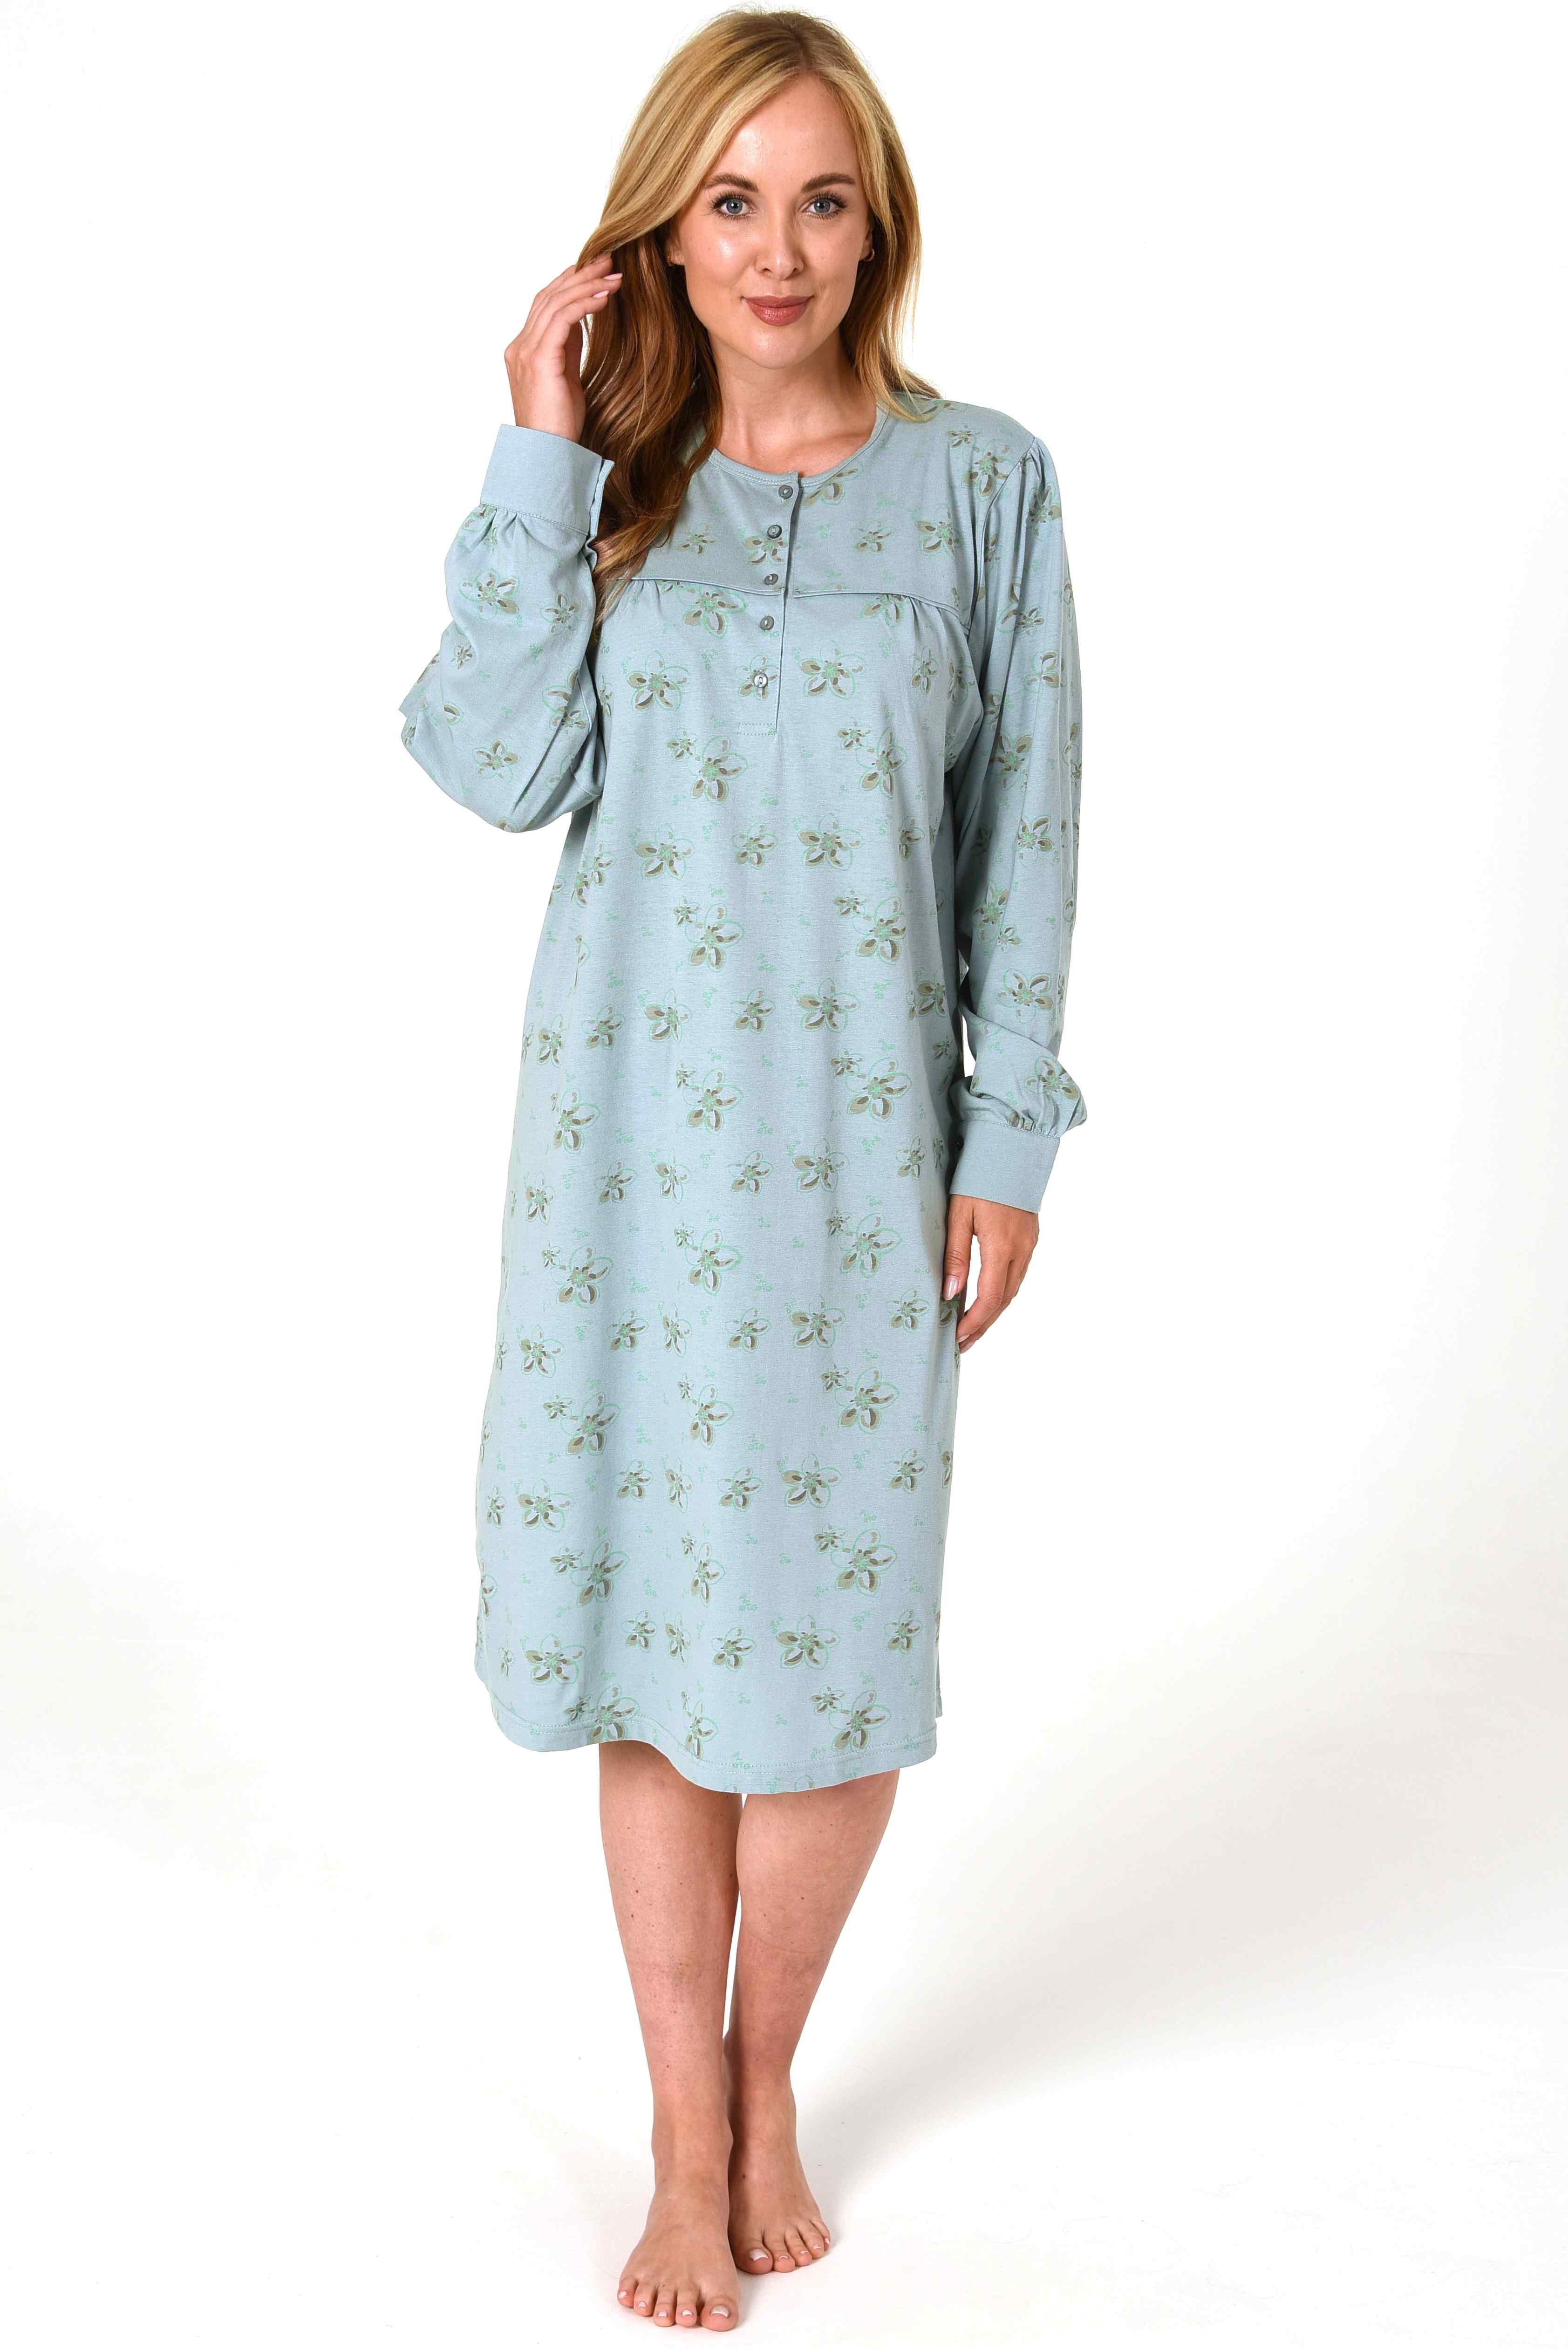 normann dames nachthemd Jeanette 68135 - Groen - XL 48/50